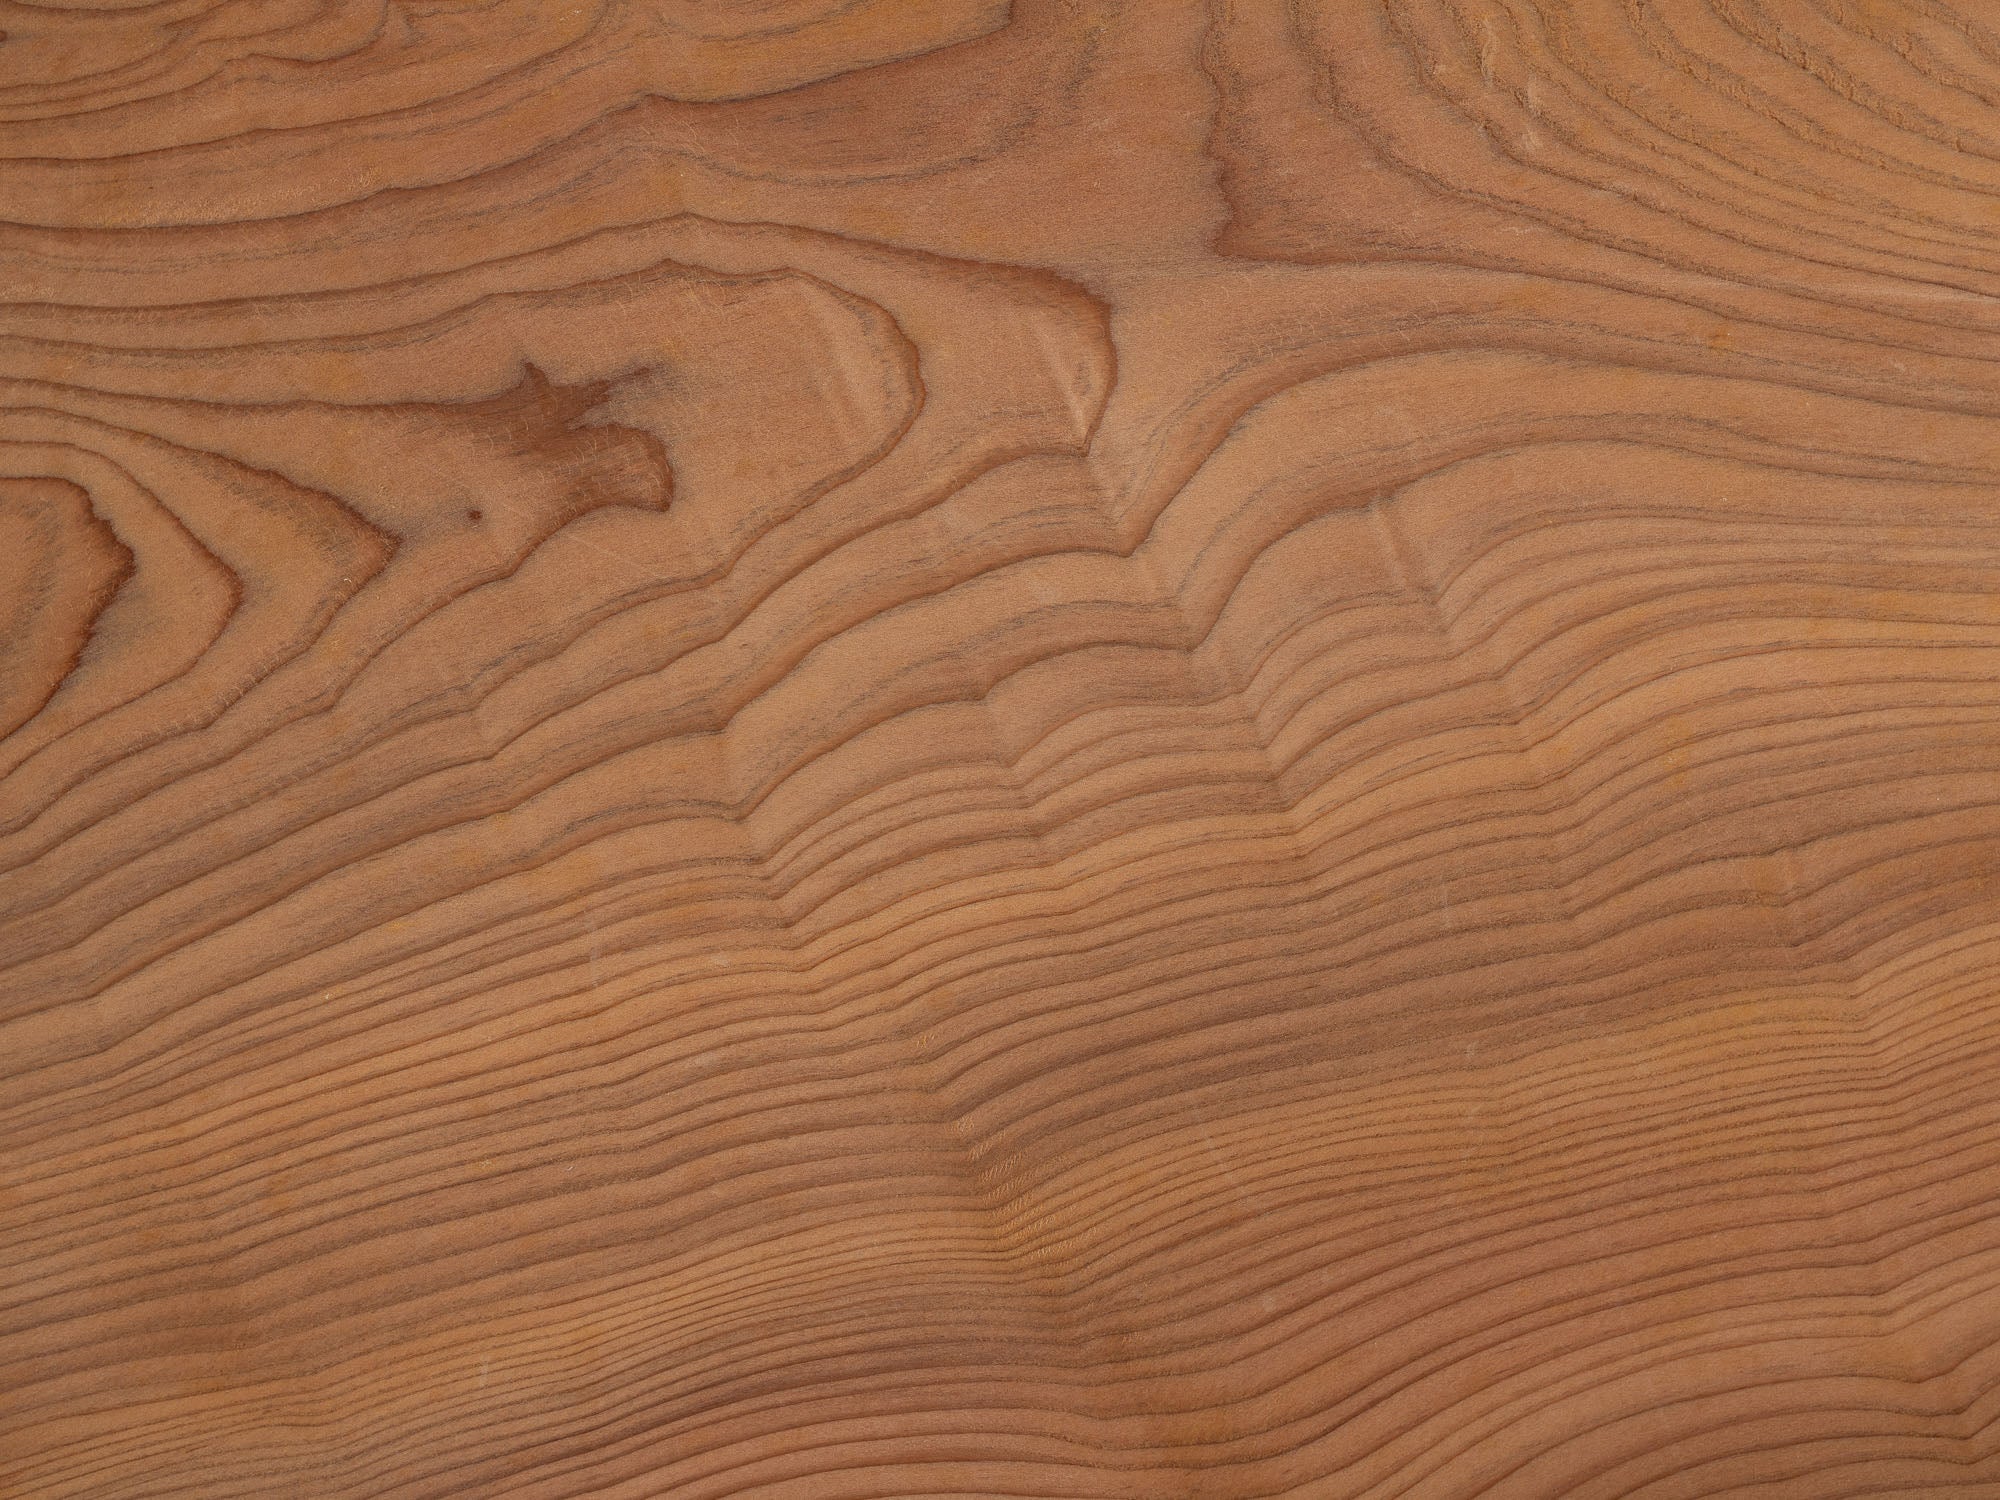 Plateau monoxyle senchabon en bois de cyprès, Japon (Fin de l'ère Showa)..Senchabon monoxyle tray in hinoki cypress wood, Japan (late Showa era)